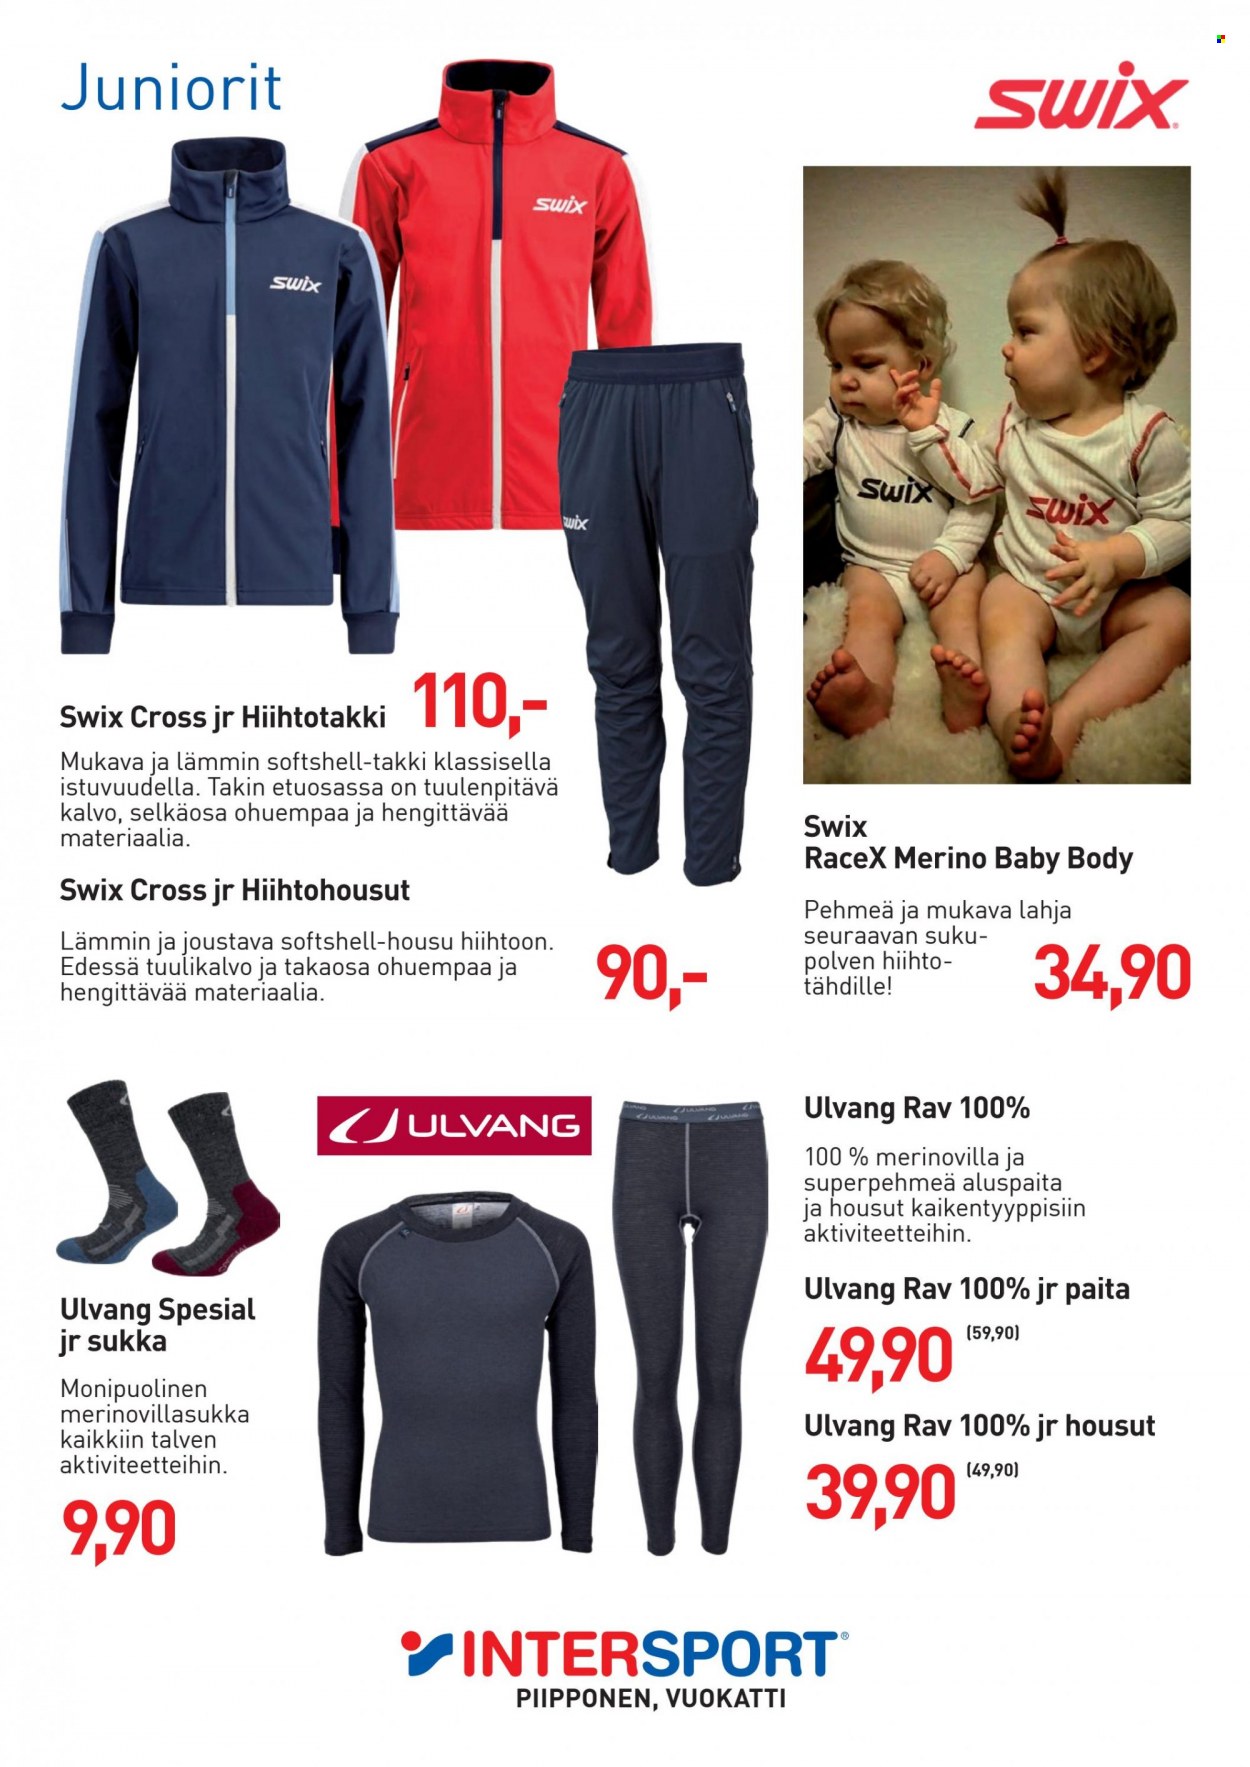 Intersport tarjoukset  - Tarjoustuotteet - Swix, softshelltakki, takki, housut, aluspaita, paita, body, hiihto. Sivu 26.